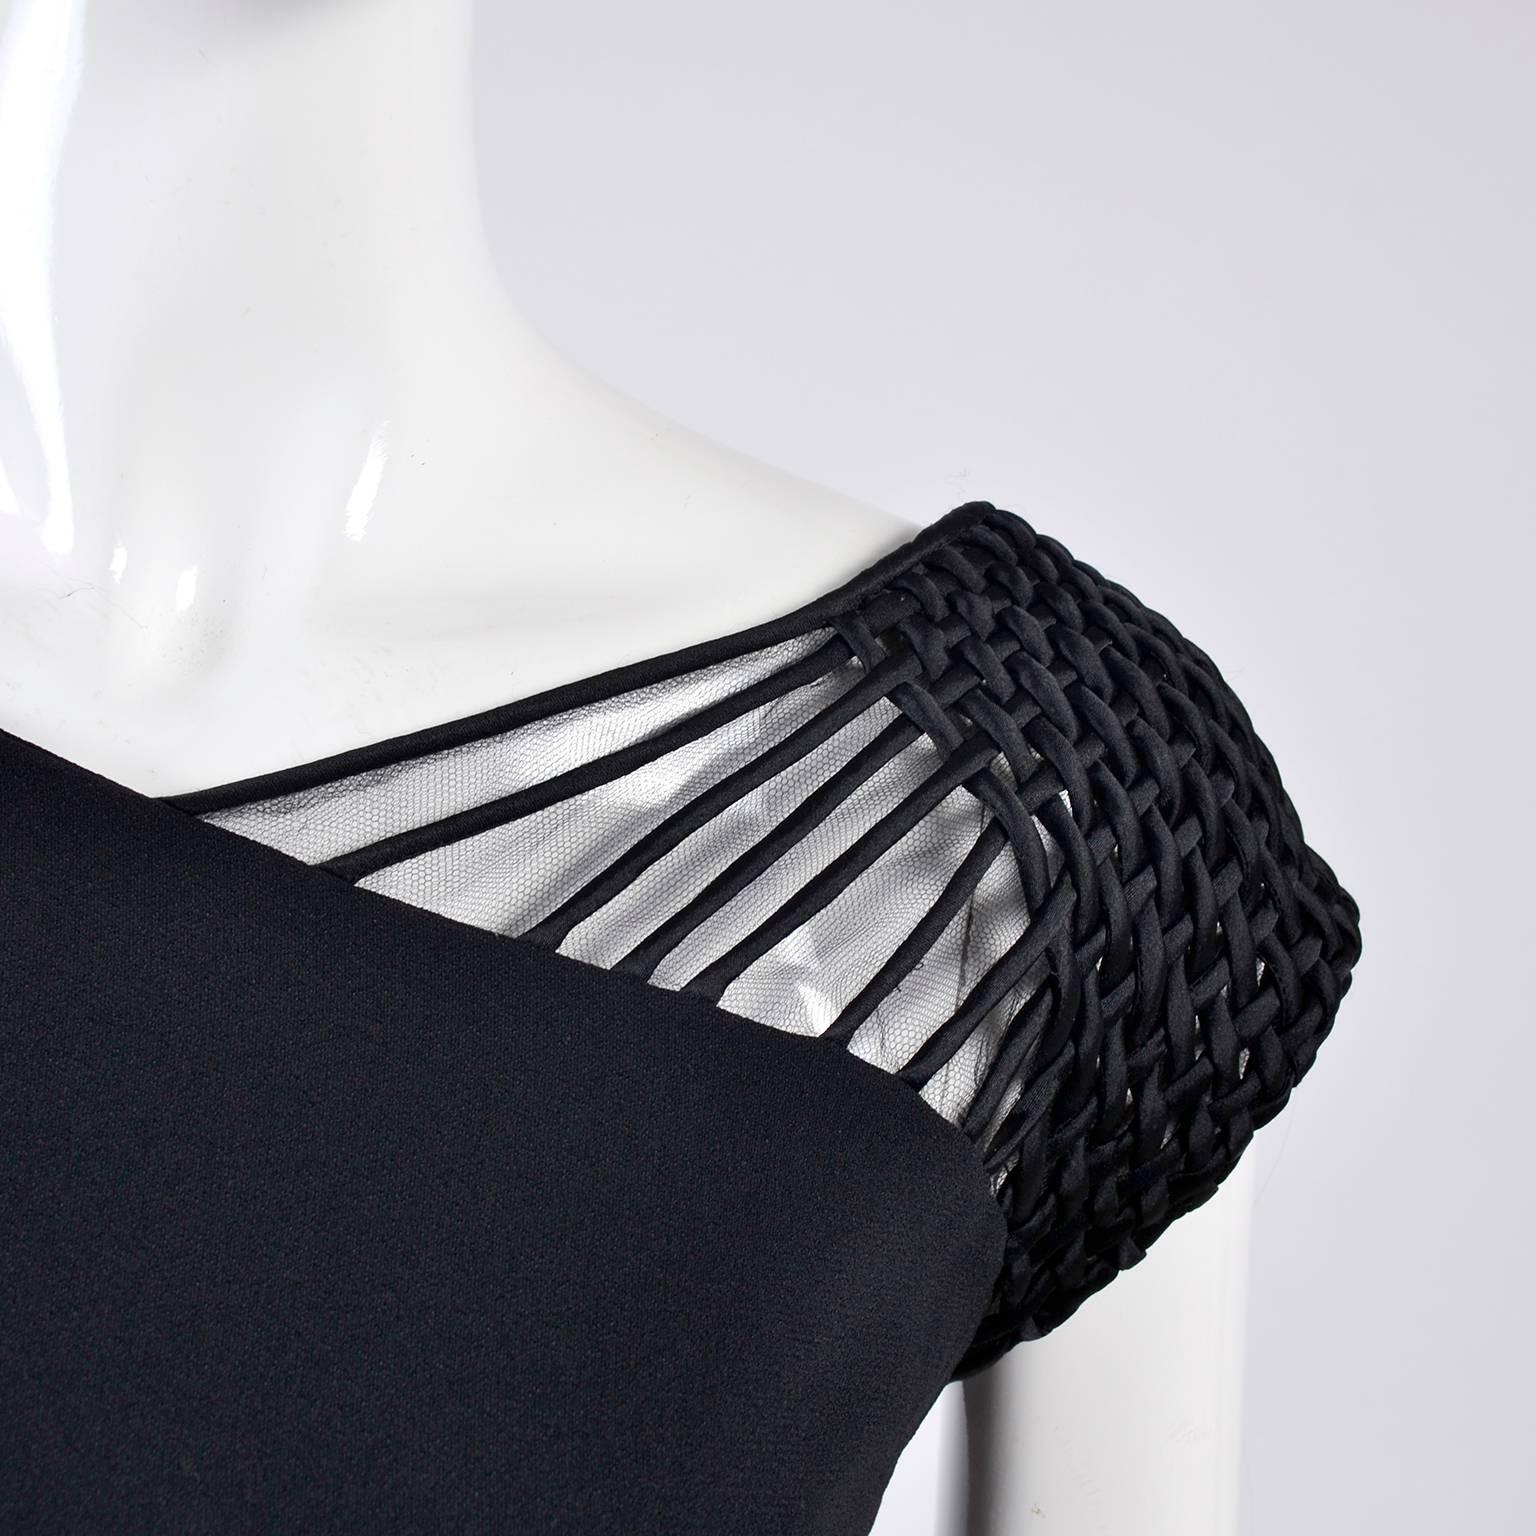 Dies ist ein wunderschönes Abendkleid von Valentino mit herrlichen gewebten Satinbändern auf einer Schulter über feinem schwarzem Netz.  Das Kleid trägt die Größe 8 und wurde 1998 in Italien hergestellt.  Es gibt einen Reißverschluss mit Haken und